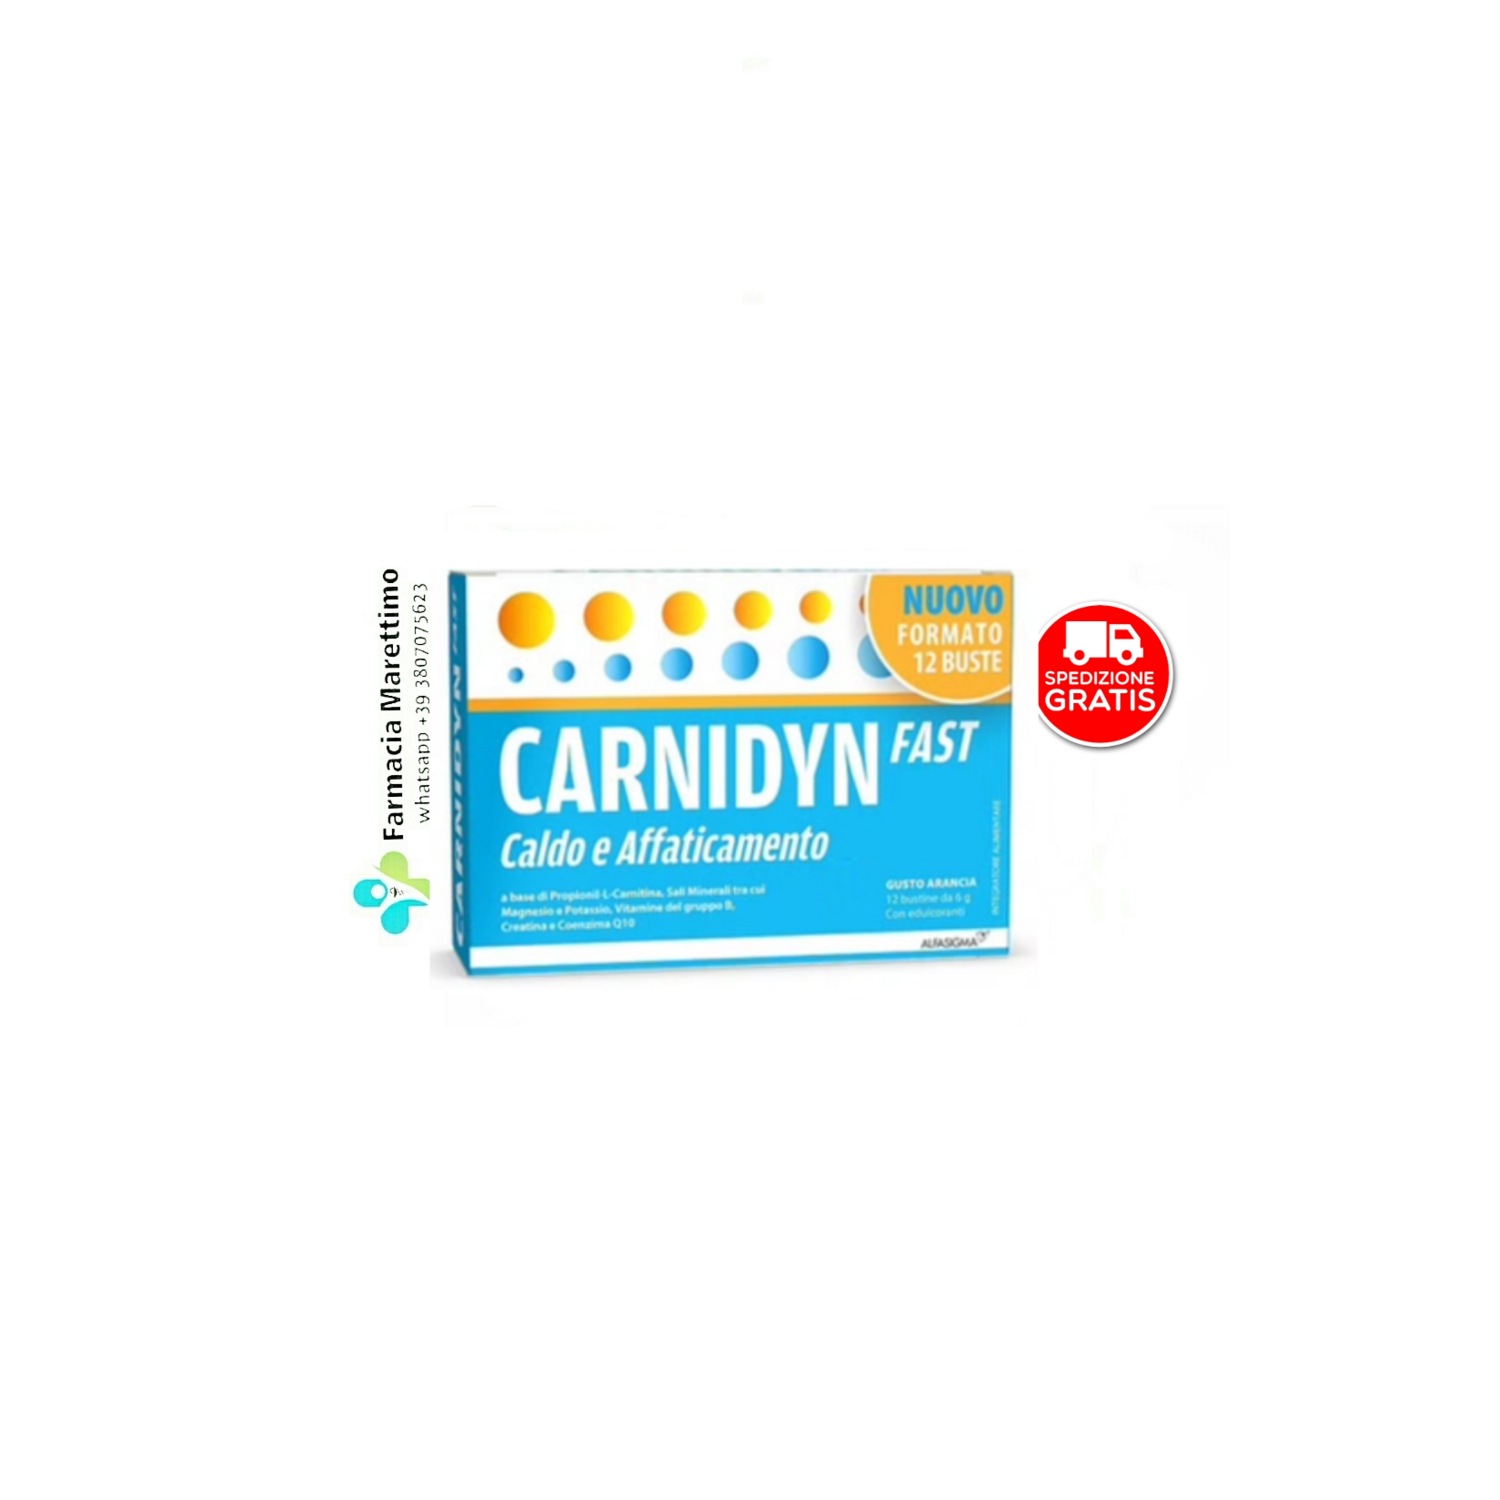 Carnidyn Fast 12 bustine - Integratore quando caldo e affaticamento fanno sentire gli effetti.